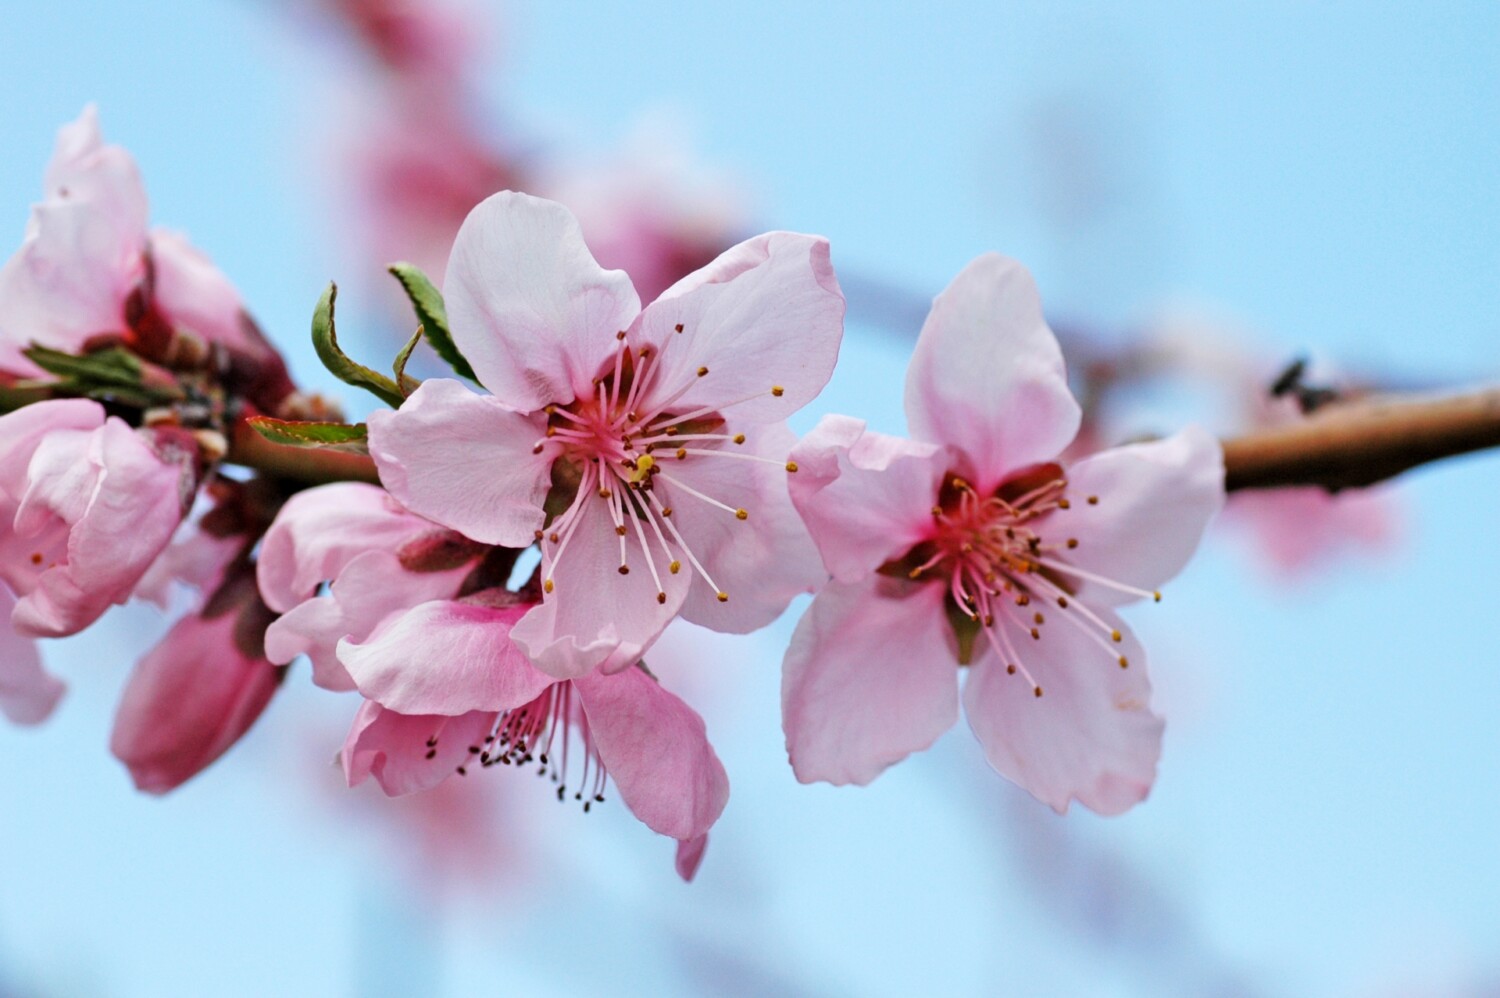 桜の花びらの枚数は何枚 押し花や遊びで日本の春を満喫しよう 心とカラダに優しい役立つ情報サイト